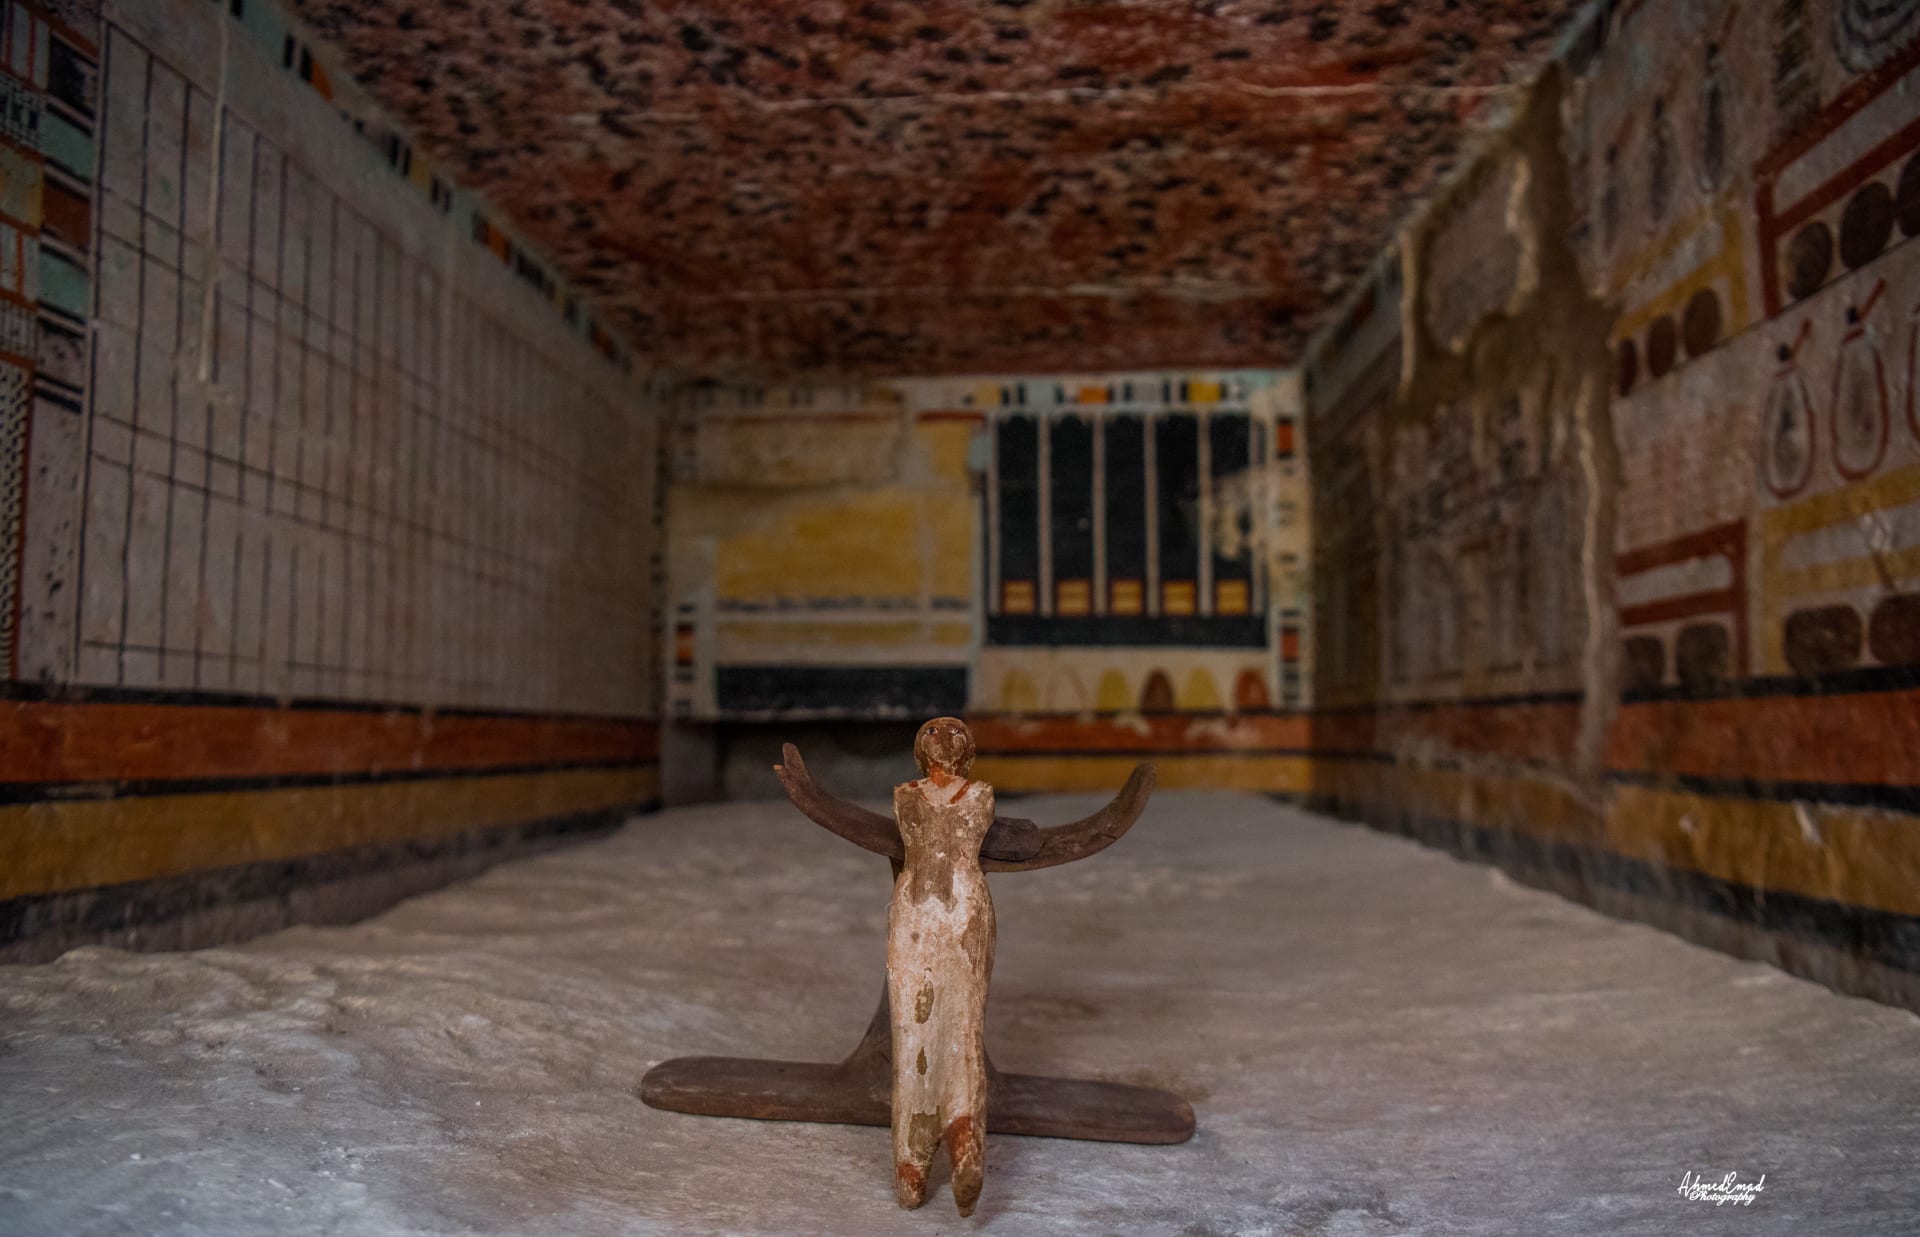 5 مقابر فرعونية ملونة تعود لنحو 4000 عام.. مصر تعلن عن اكتشاف أثري ضخم بسقارة